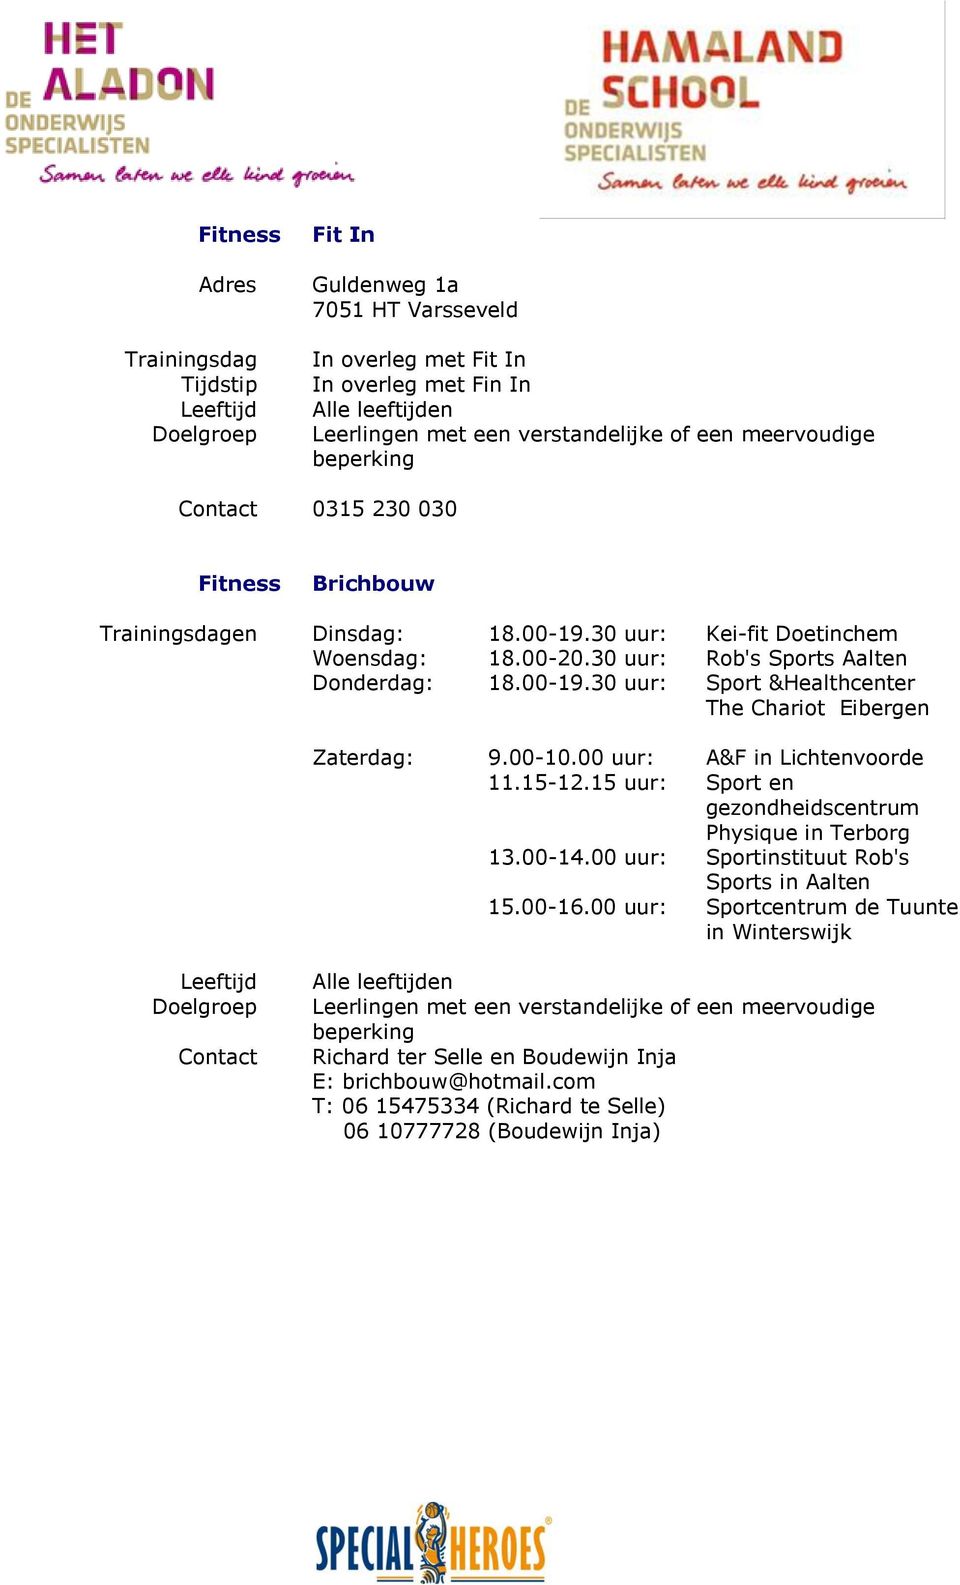 00-10.00 uur: A&F in Lichtenvoorde 11.15-12.15 uur: Sport en gezondheidscentrum Physique in Terborg 13.00-14.00 uur: Sportinstituut Rob's Sports in Aalten 15.